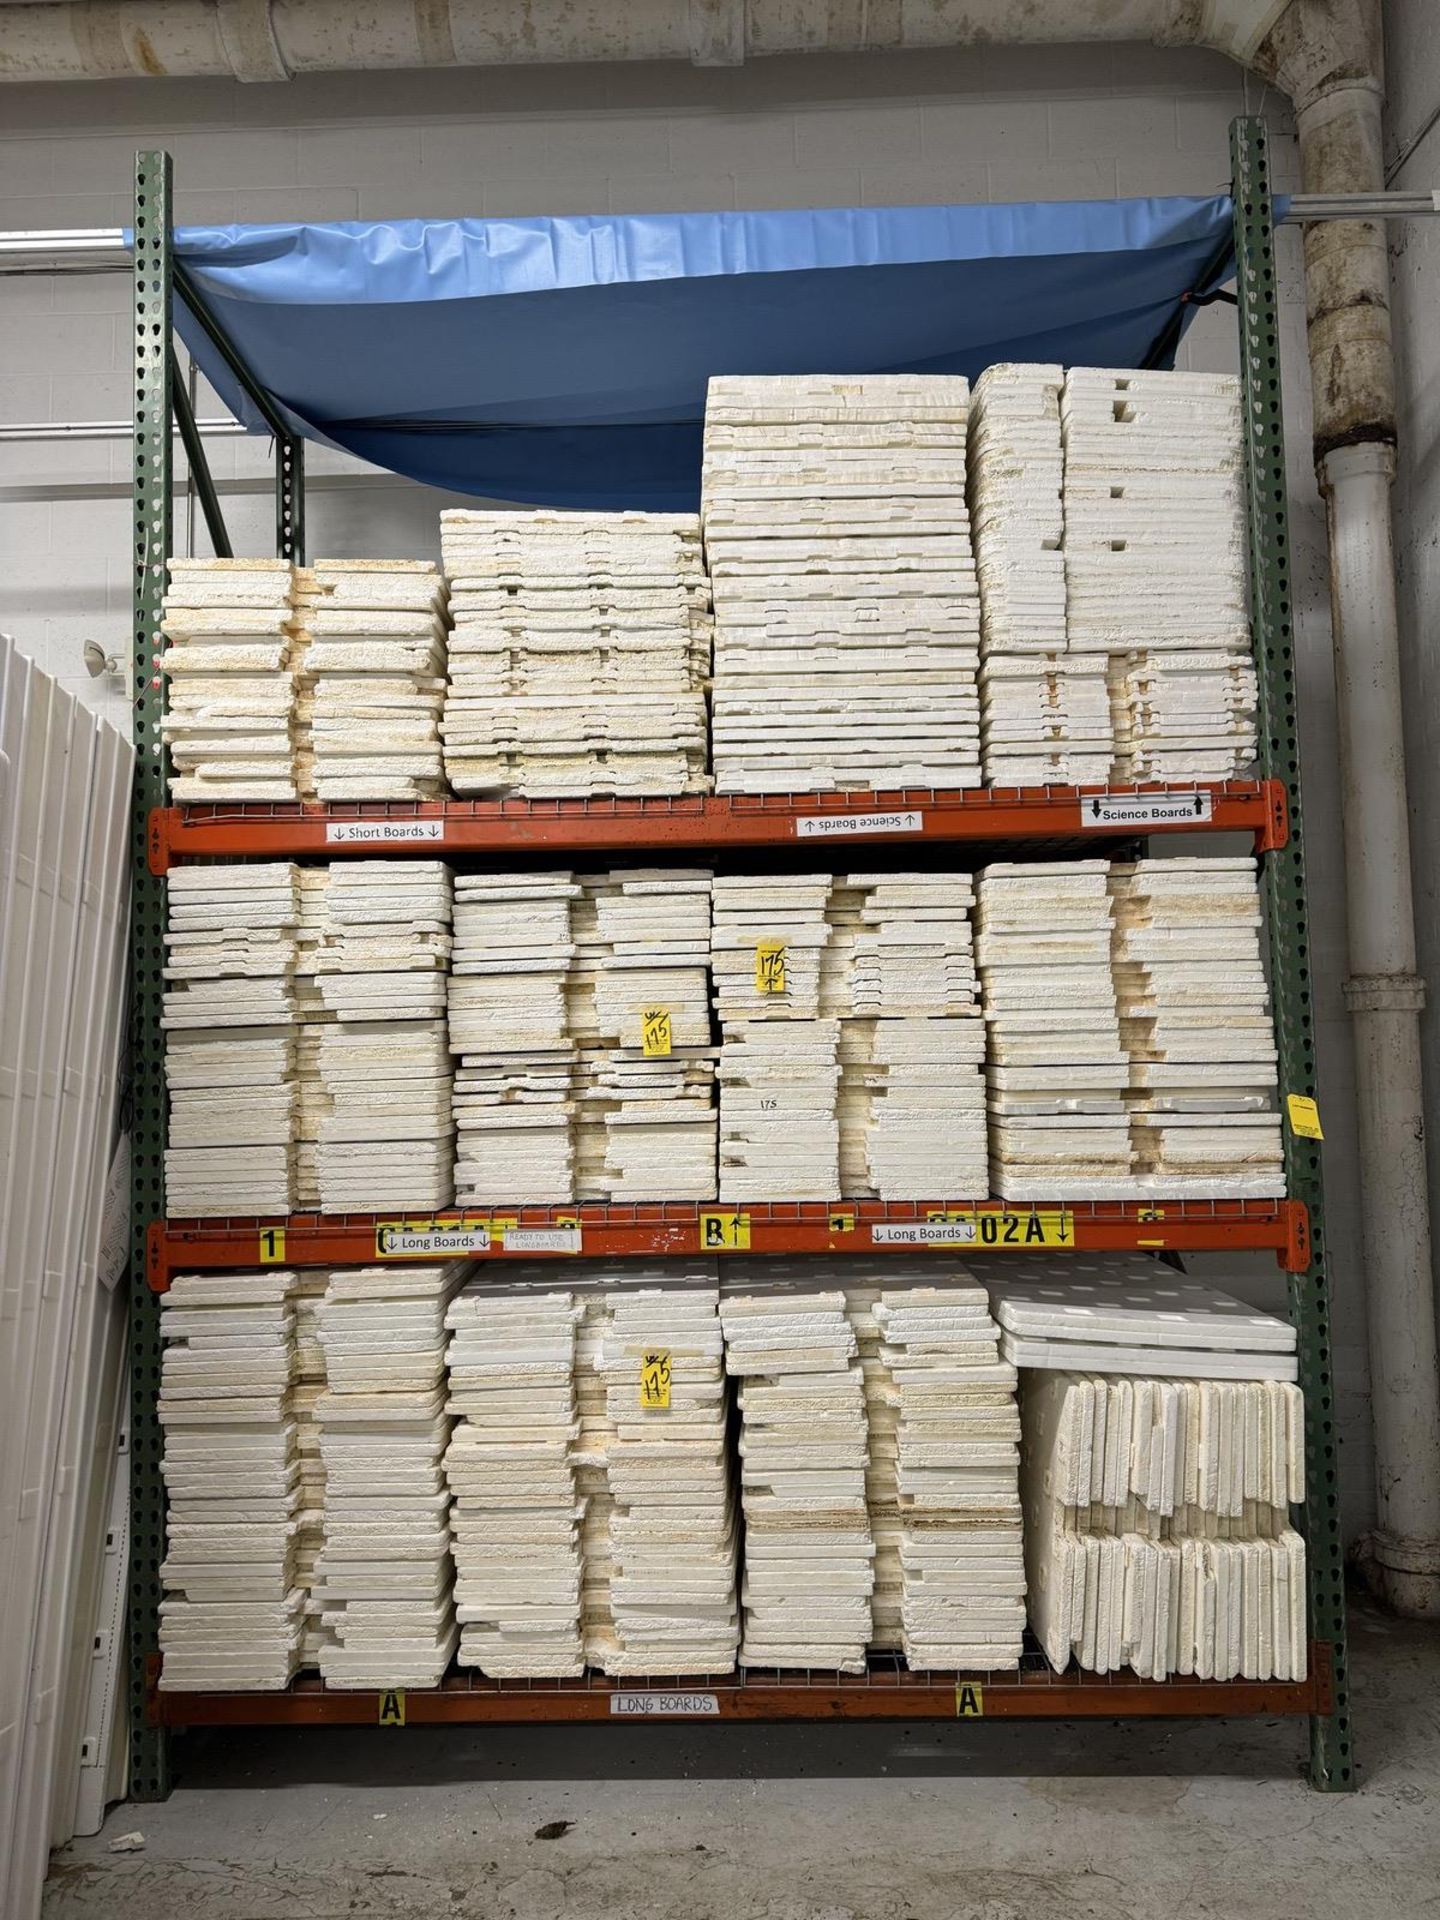 Lot asst. Styrofoam Forms on (3) Shelves